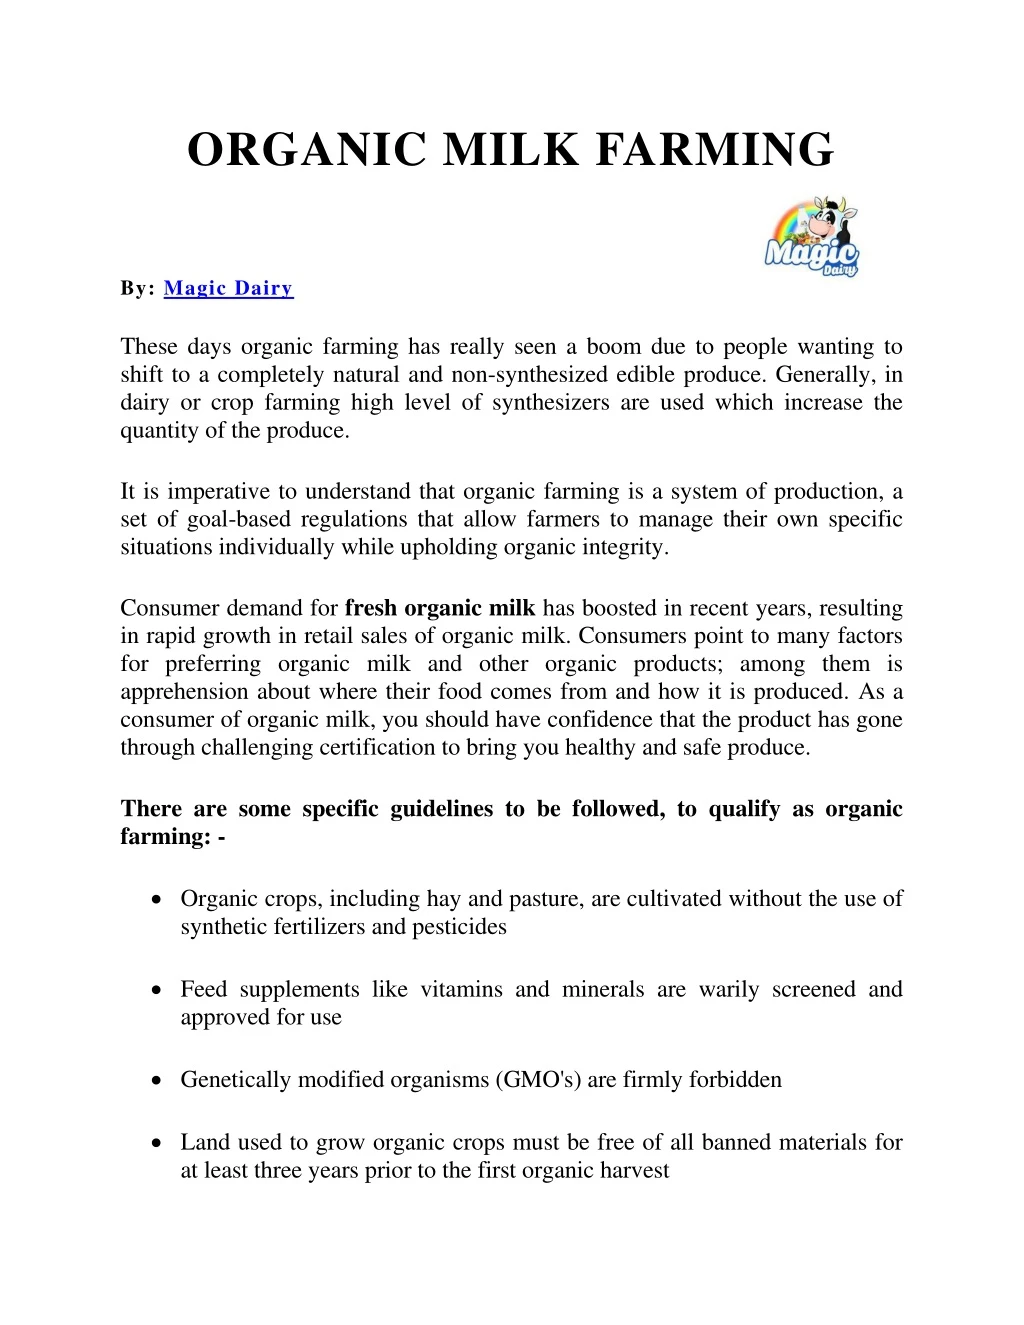 organic milk farming